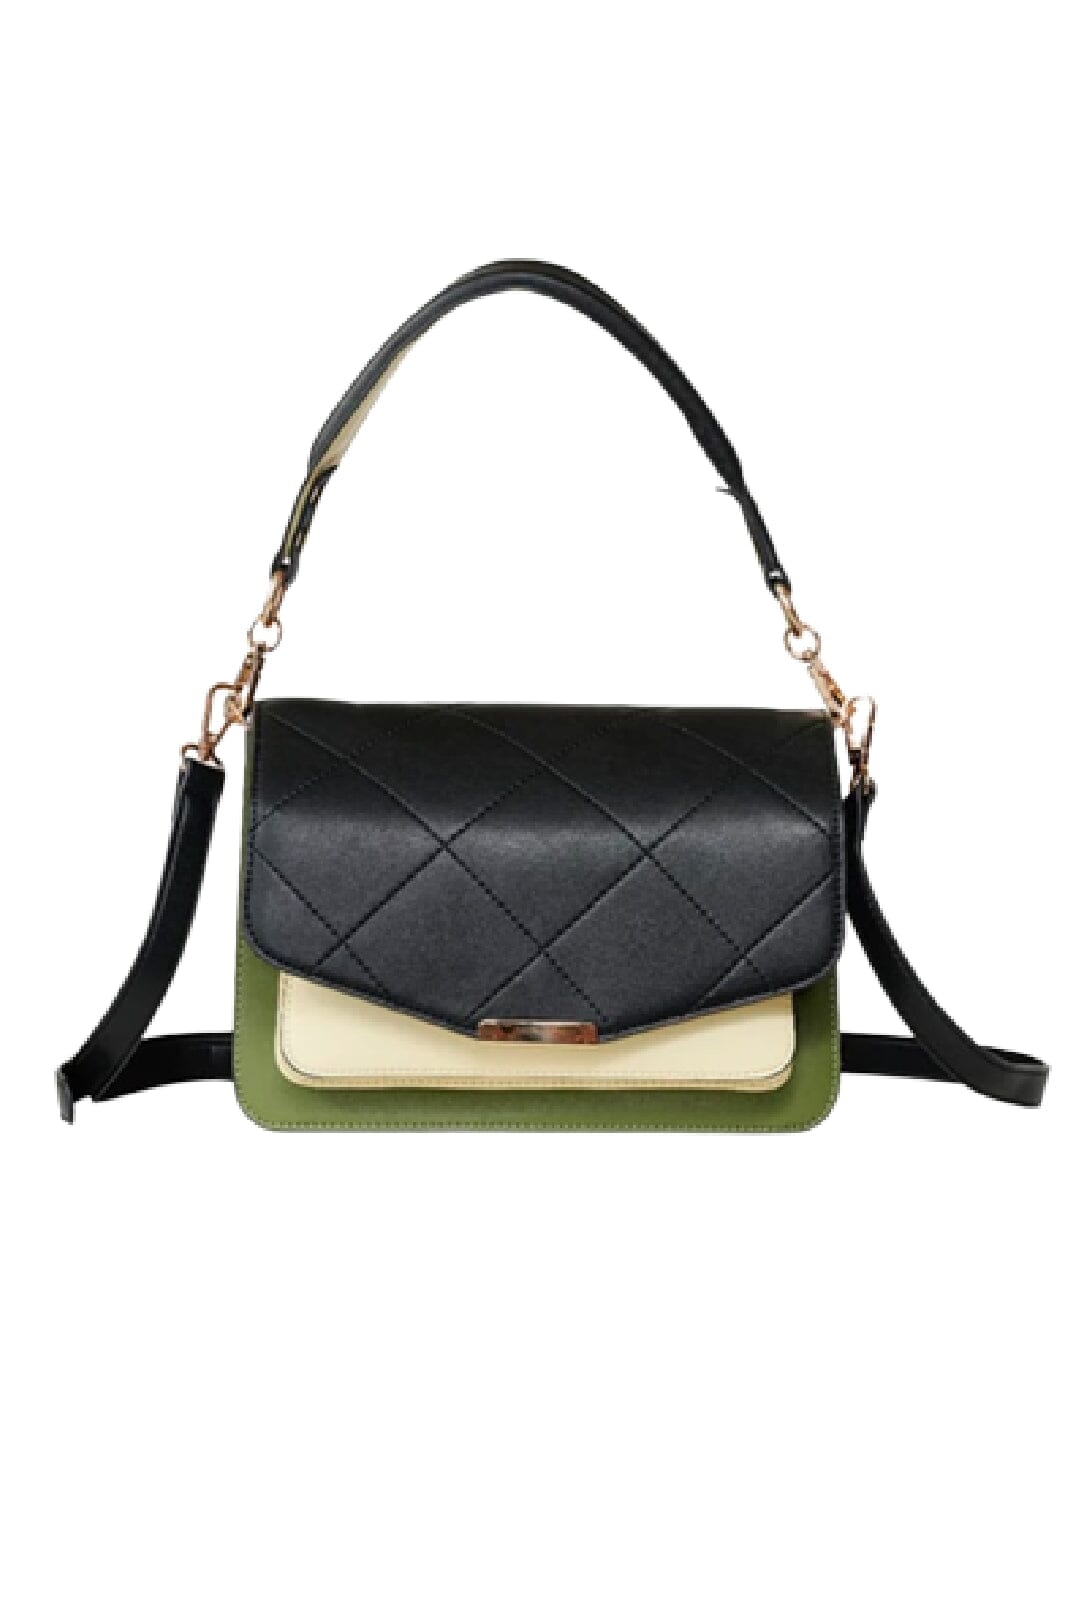 Noella - Blanca Bag Medium - Black/green/cream Tasker 